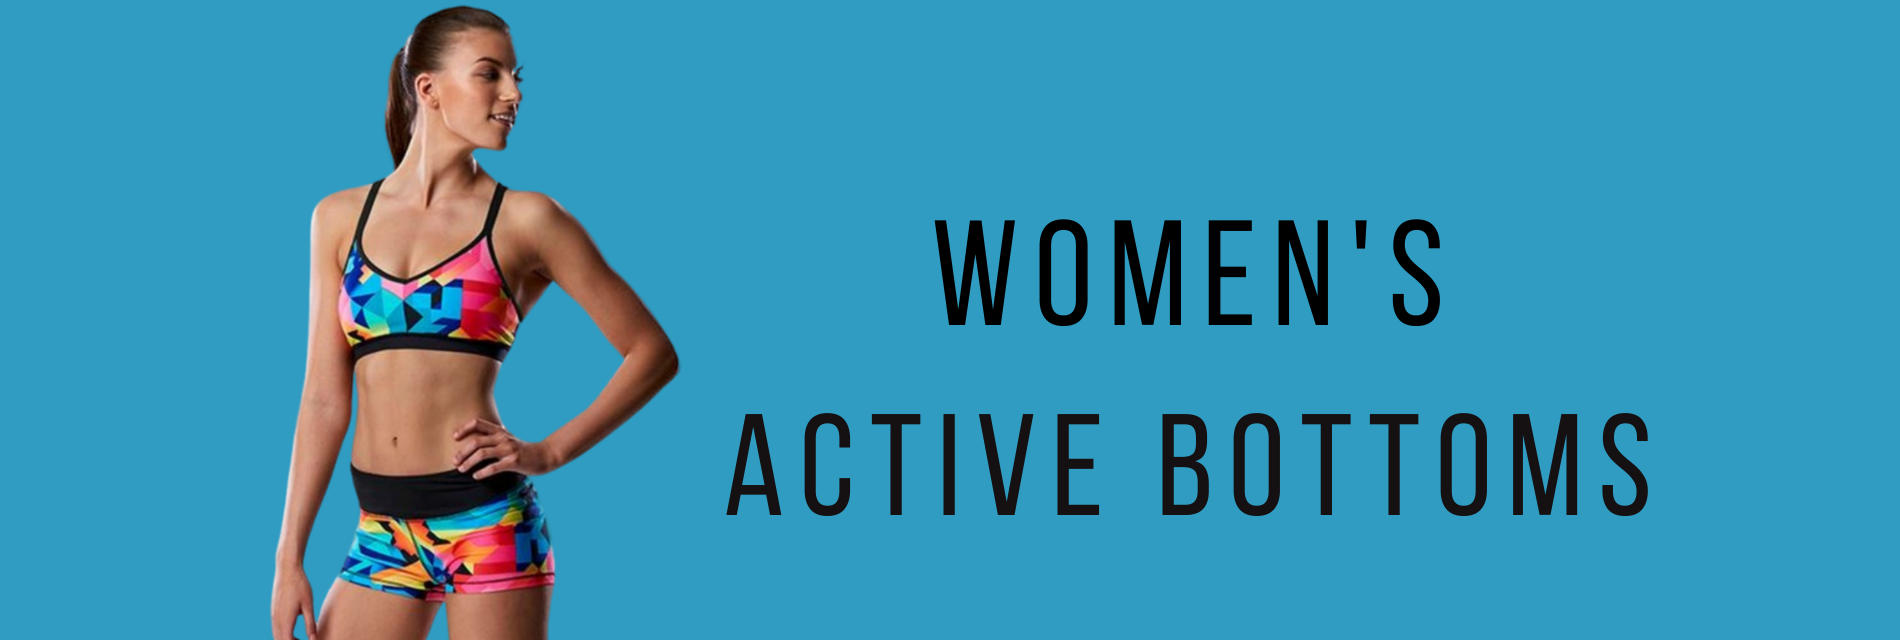 Women's Active Bottoms